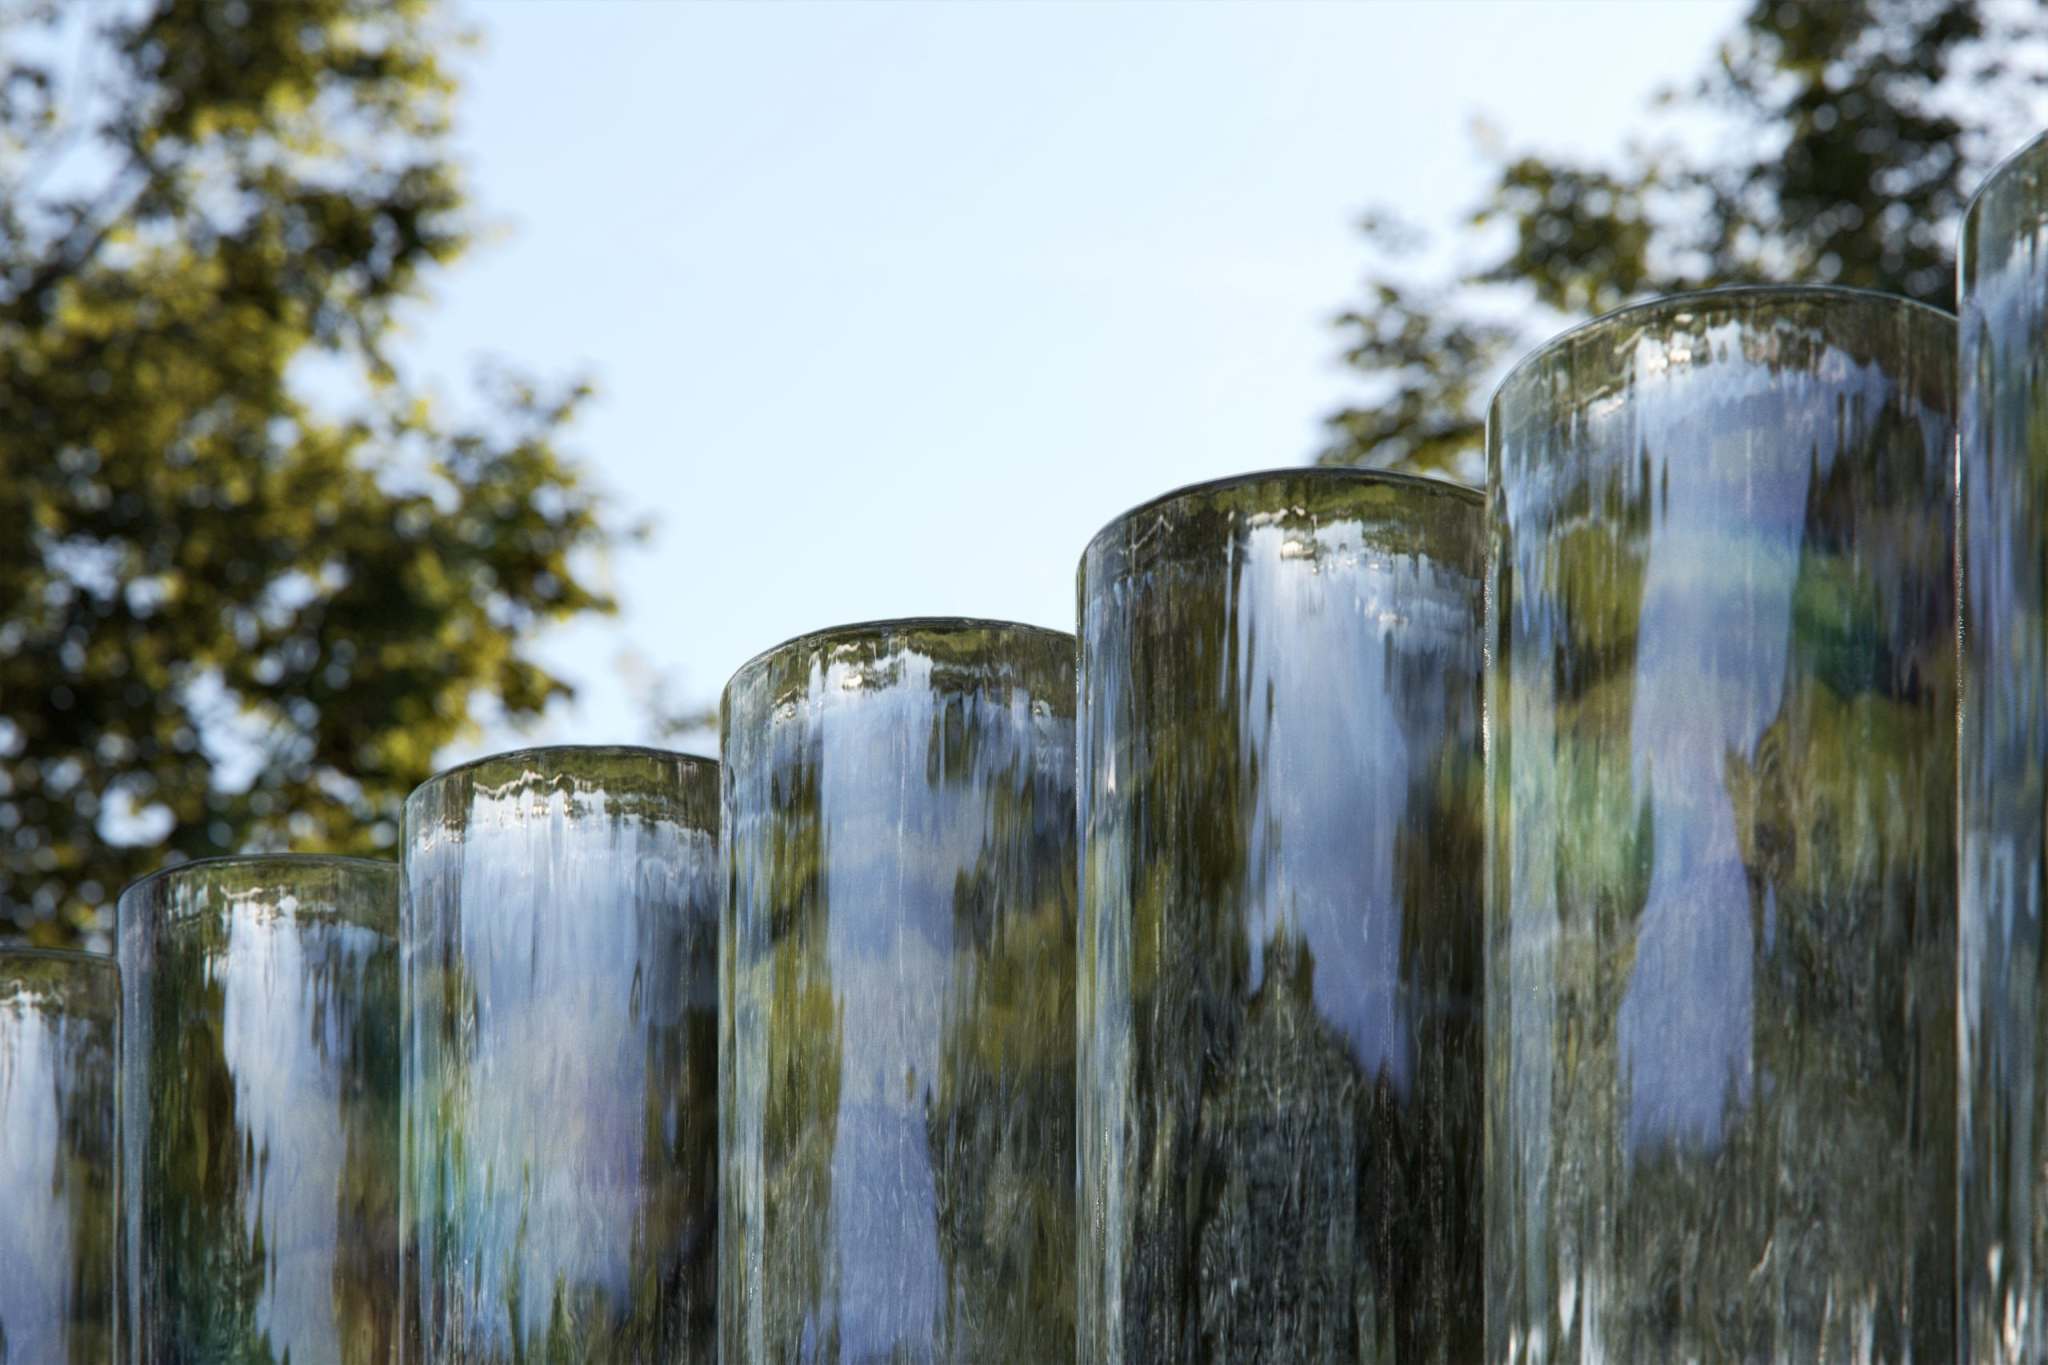 蘋果總部將展出 400 根波浪玻璃圓柱的《海市蜃樓》幻境 | Apple News, Apple Park, Mirage, Paterson | iPhone News 愛瘋了